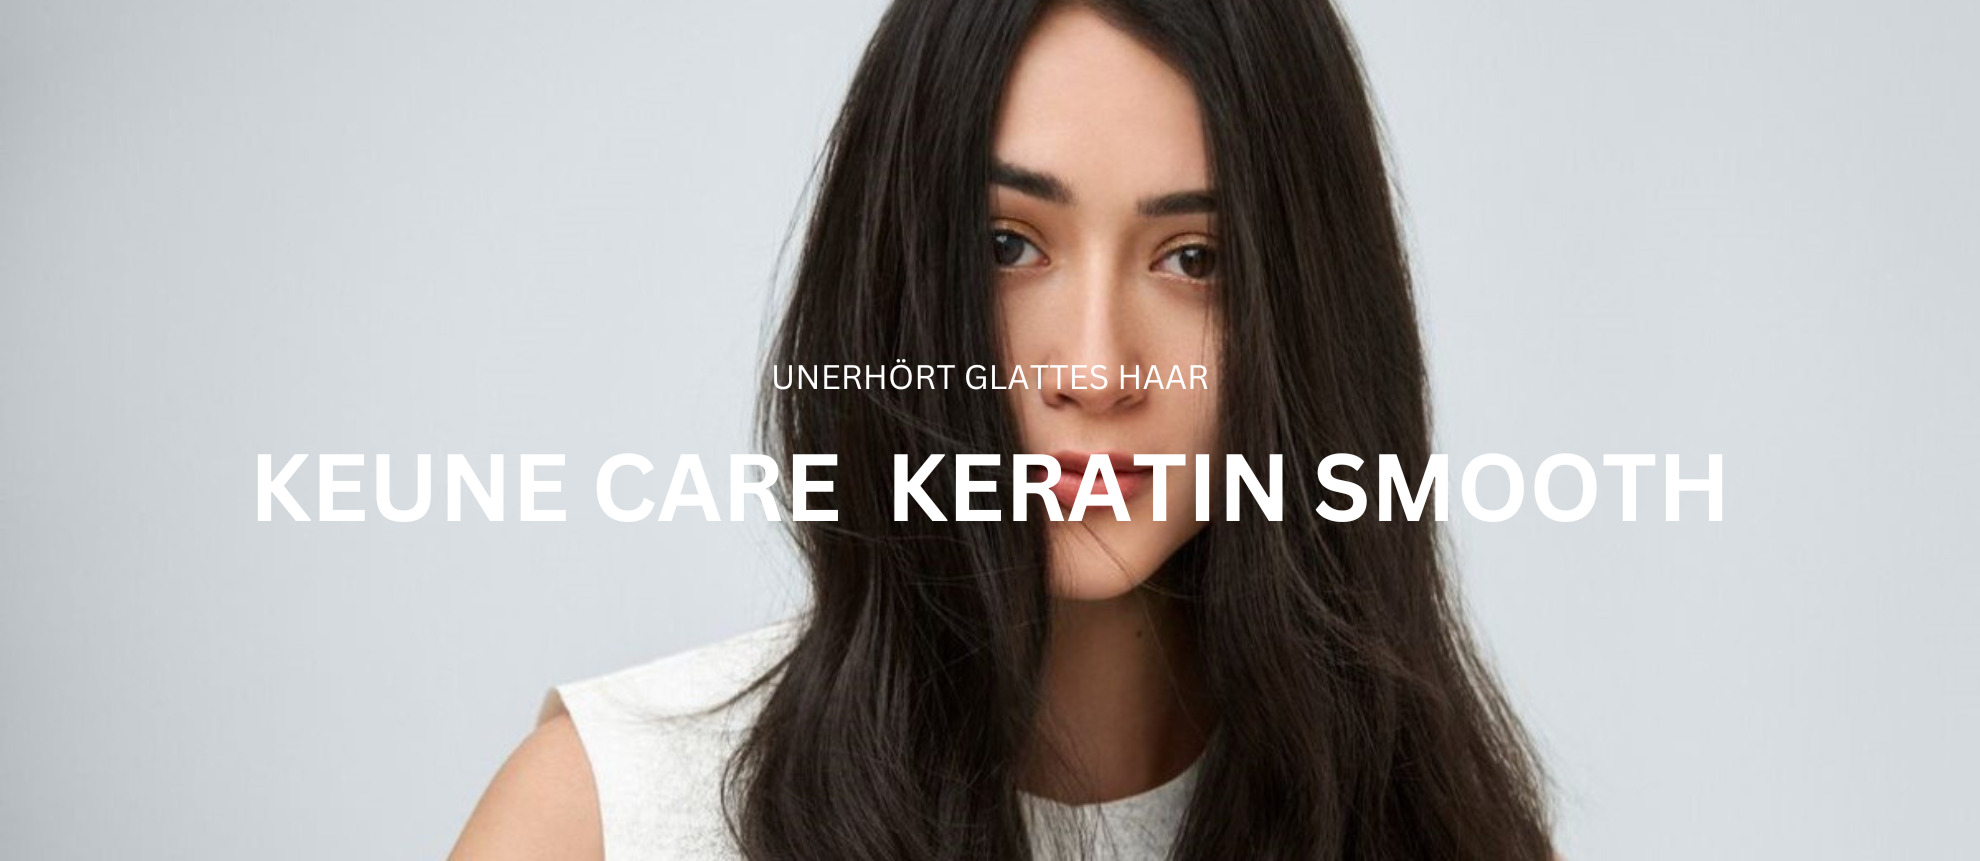 Keune Care Keratin Smooth – Intensive Pflegeprodukte mit Keratin für geschmeidiges, frizzfreies Haar. Jetzt entdecken auf keune.ch!